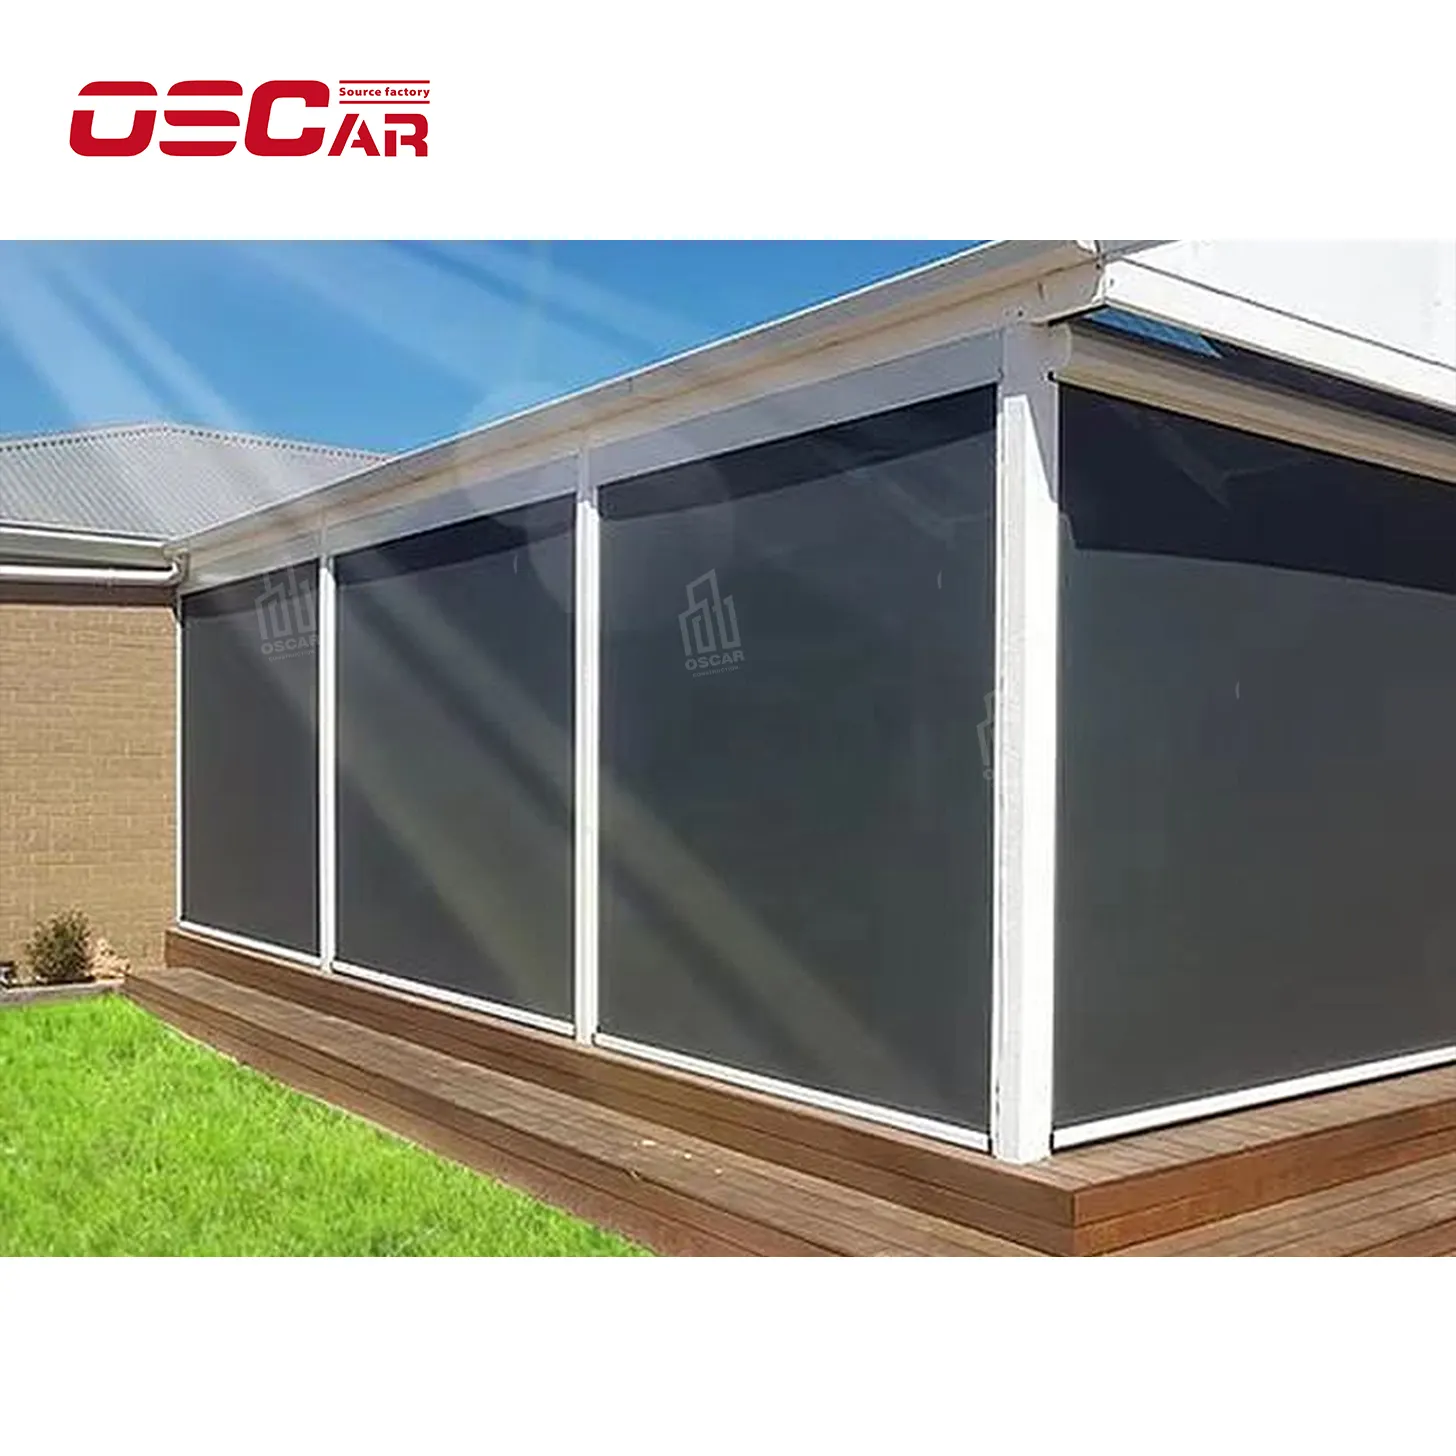 Rts-elektrikli su geçirmez Zip ekran açık motorlu güneşlikler motorlu Zip parça açık veranda özel açık güneşlikler için kör